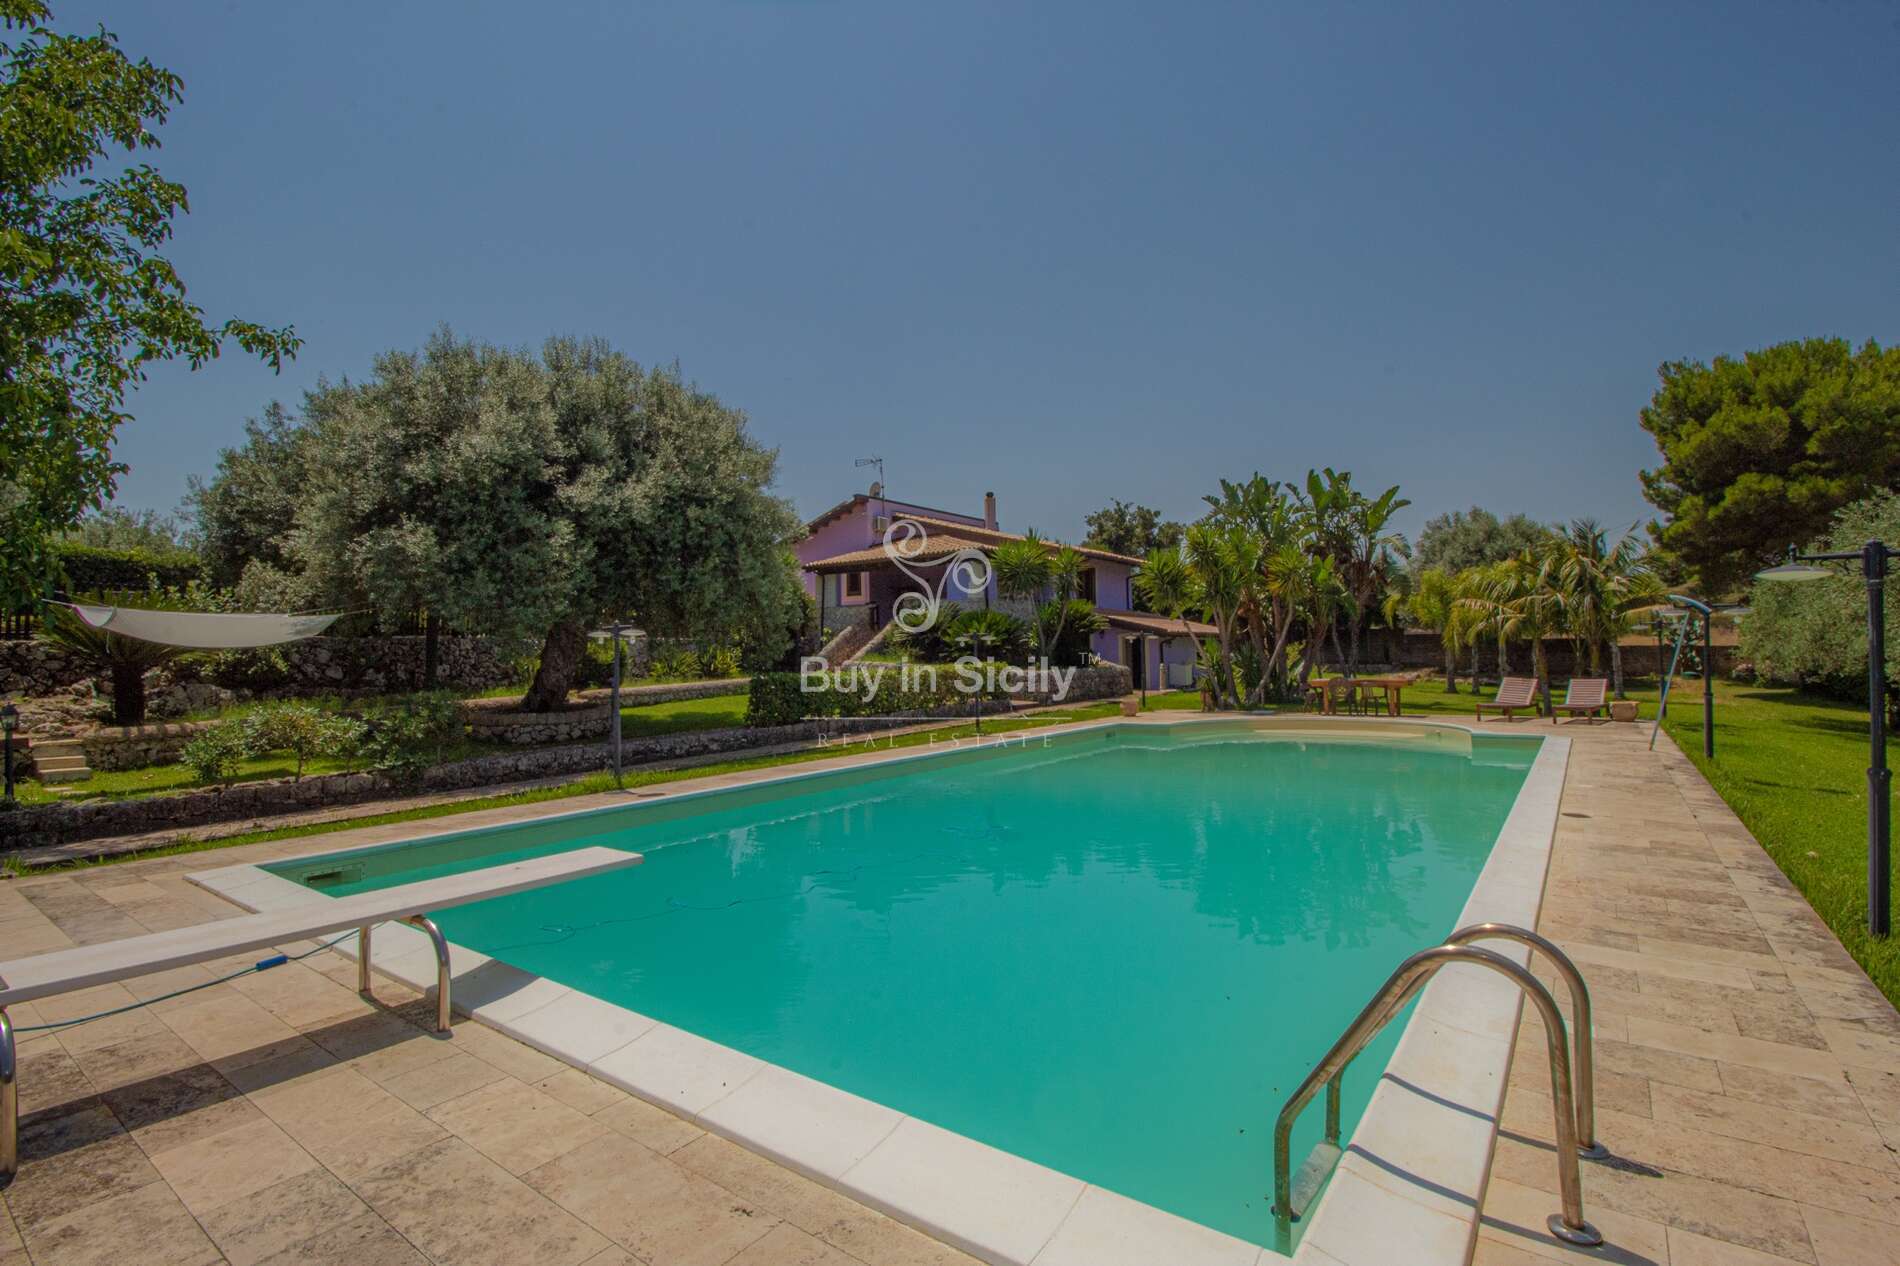 Villa with smimming pool in Solarino (Sr)